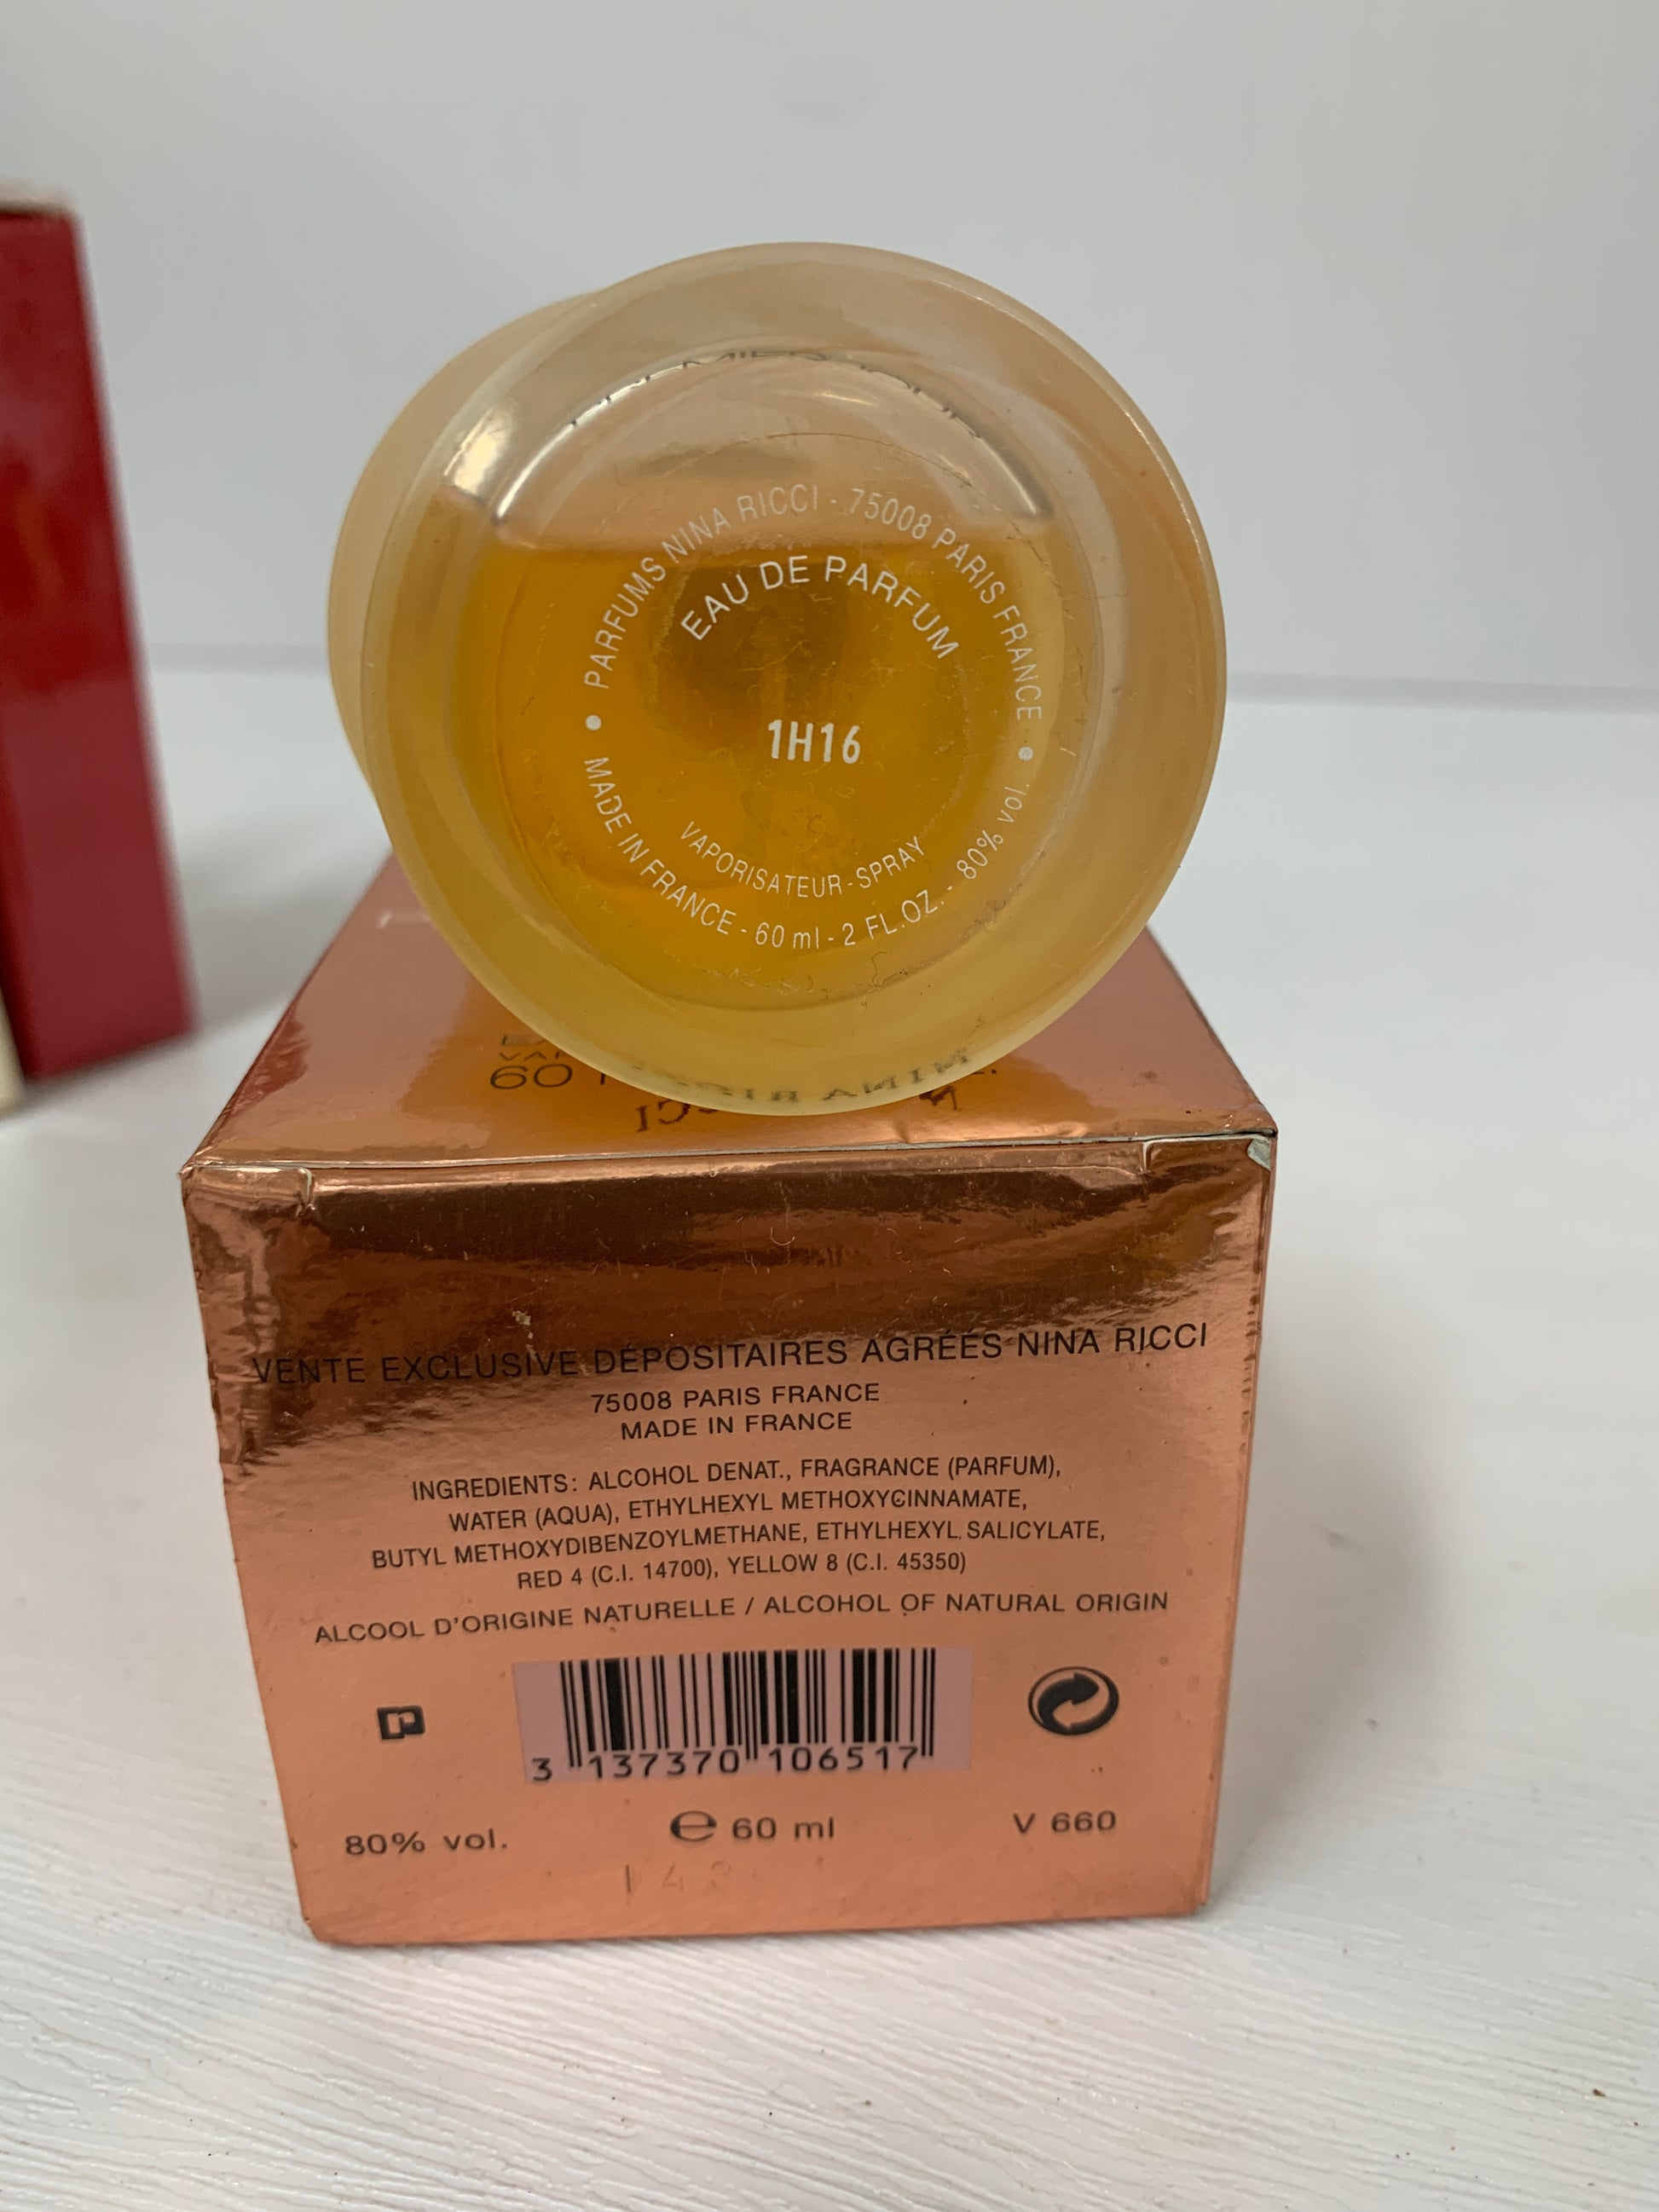 Trendy Nina – Ground parfum 60ml 2 edp eau ricci premier oz de OCT21 jour -